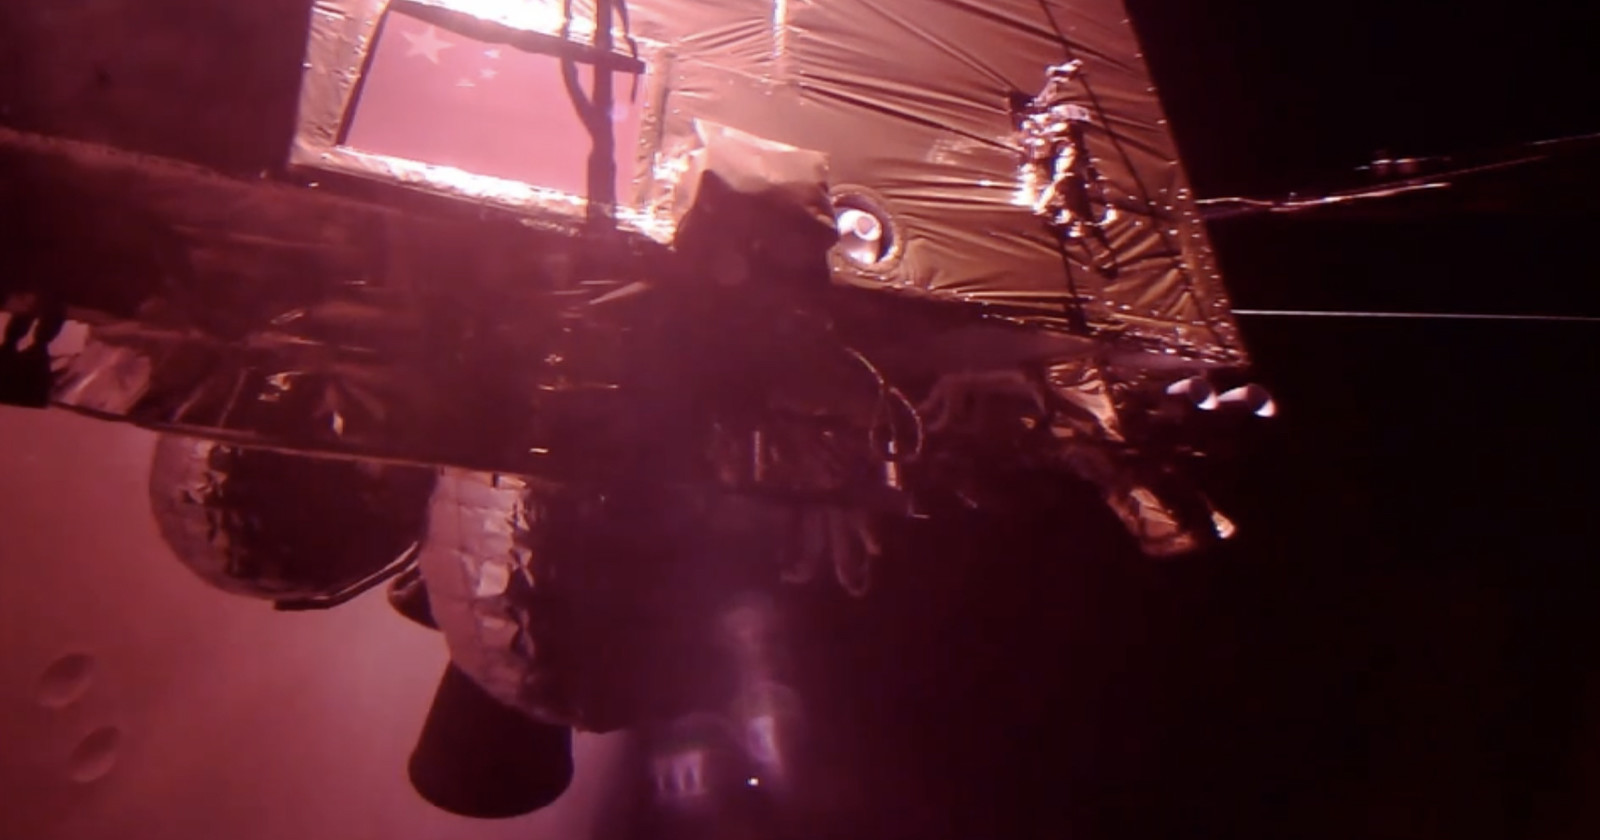 Tianwen-1 Selfie Video over Mars